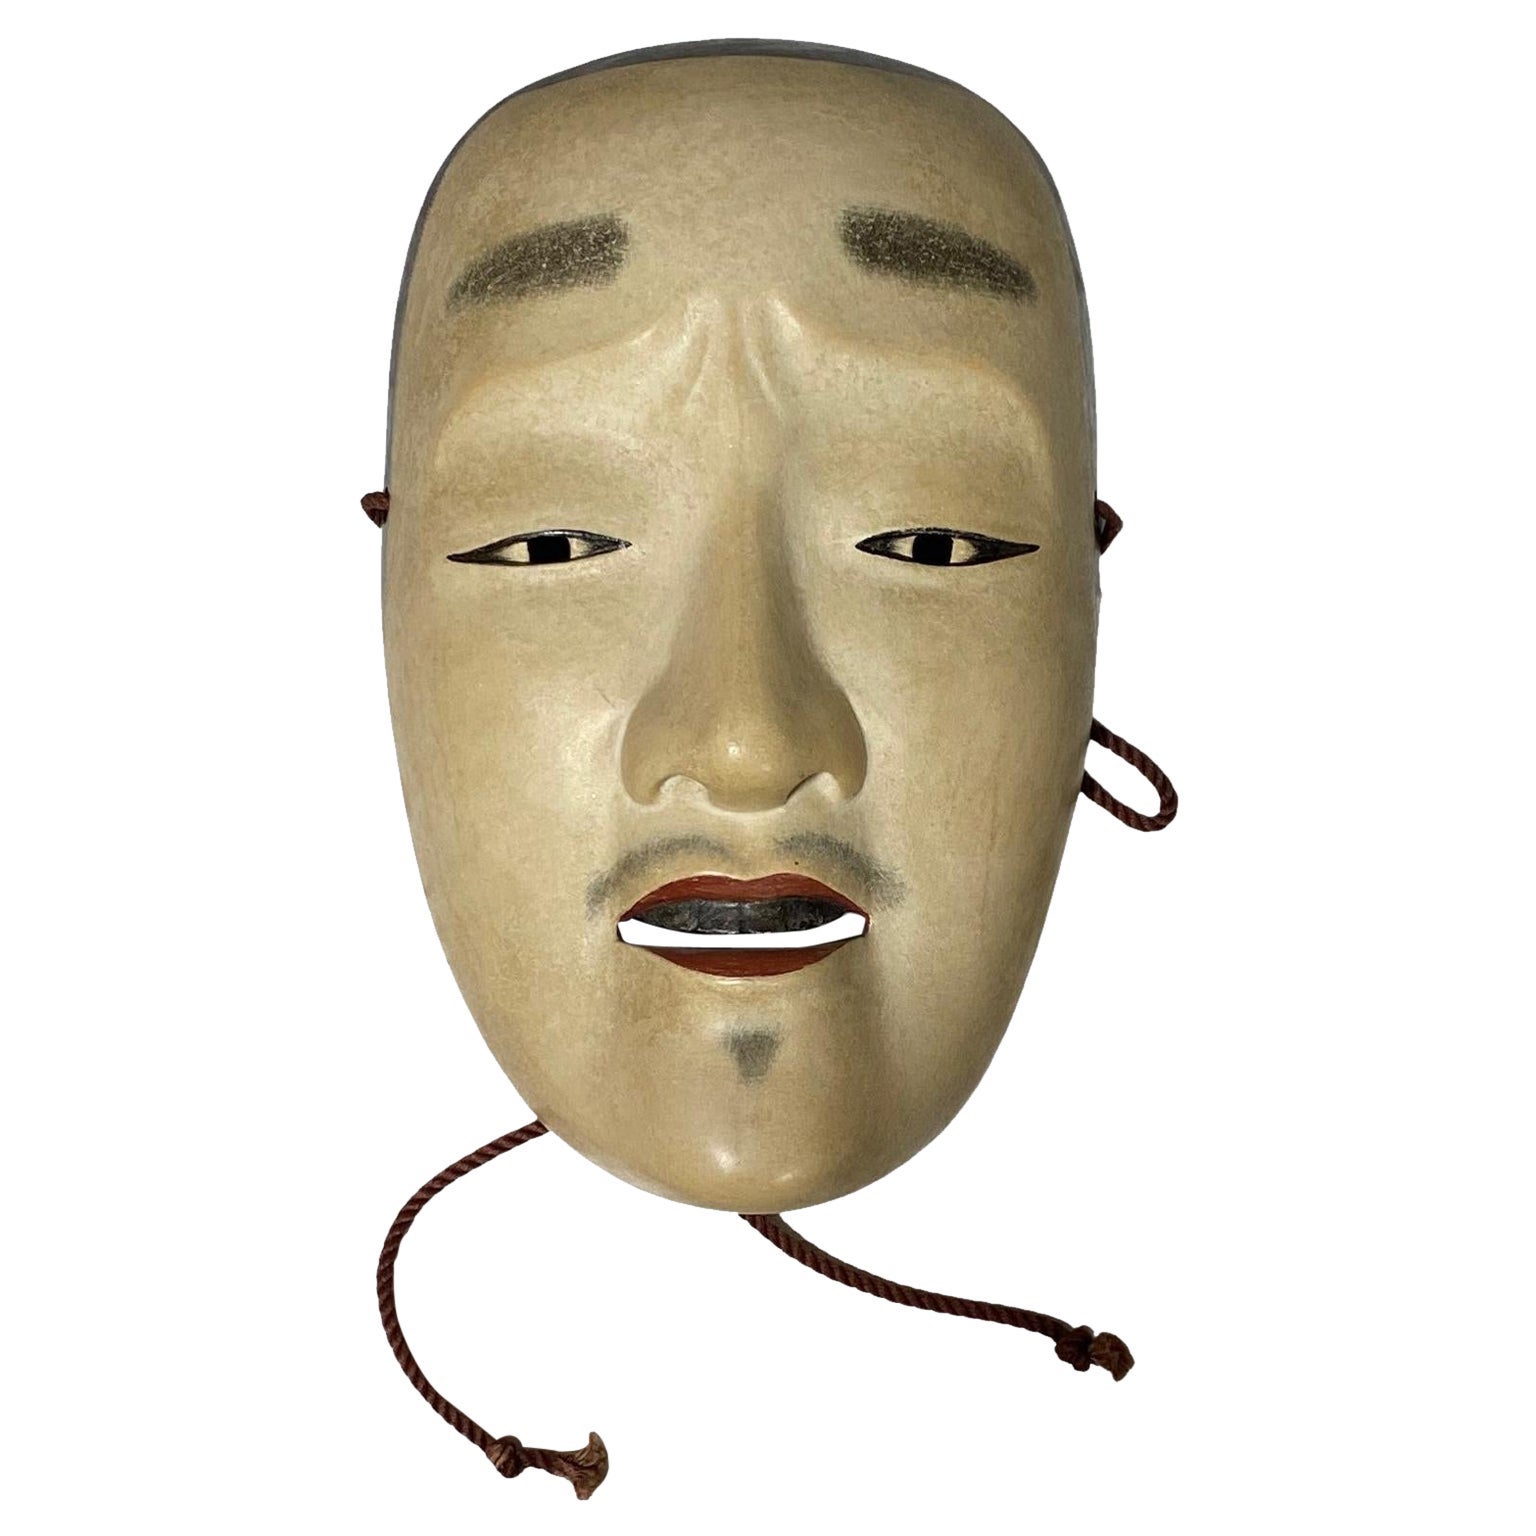 Masque de théâtre Noh en bois sculpté à la main, signé Chujo, première période Showa